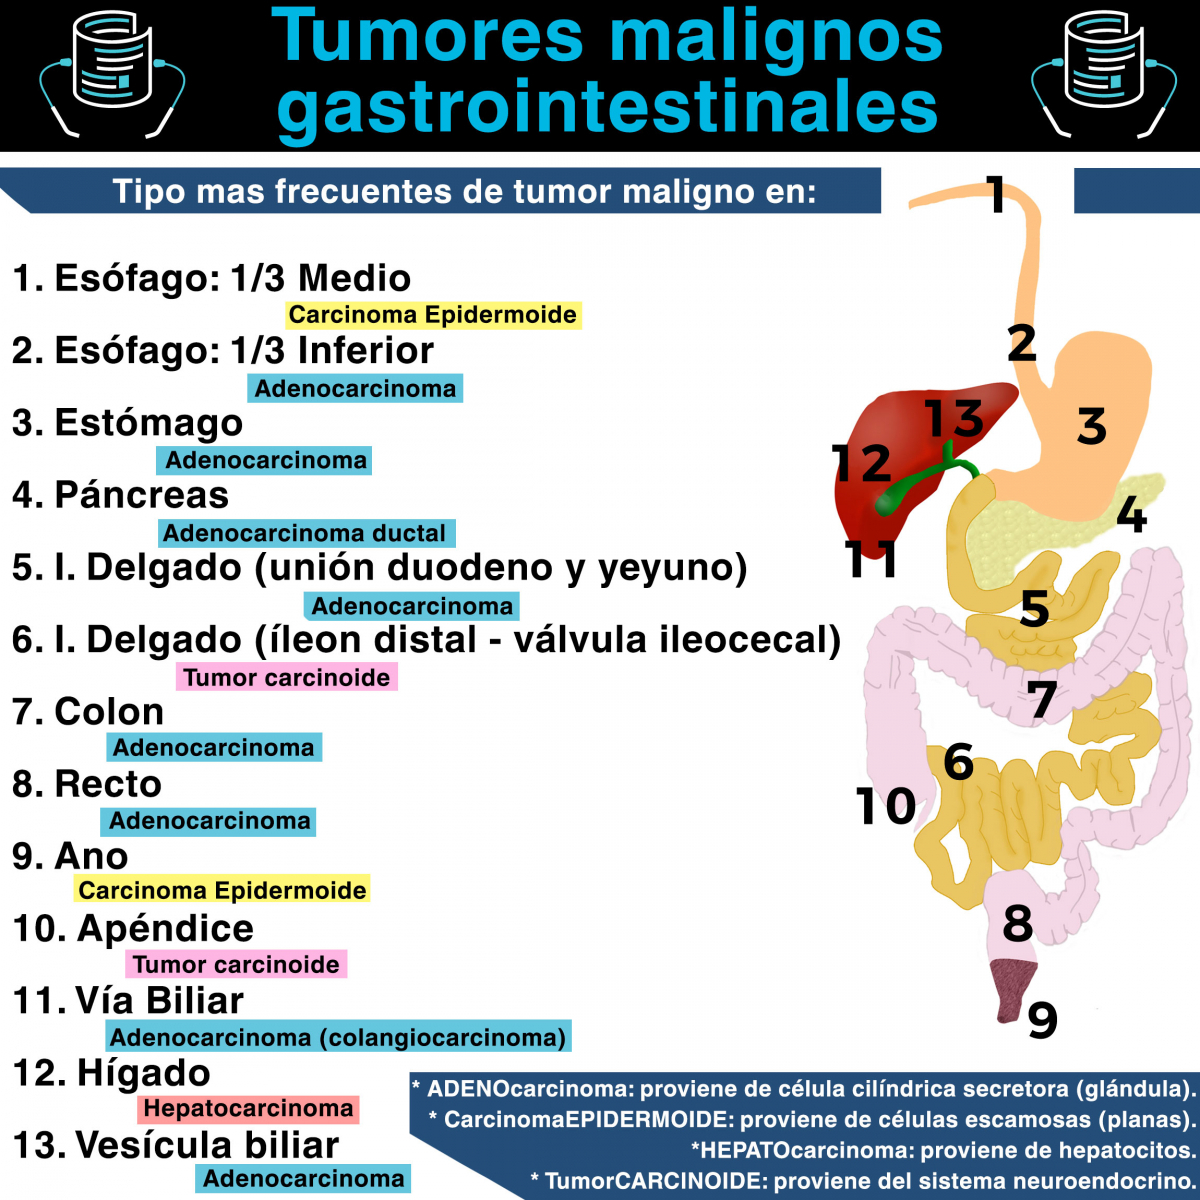 Tumores malignos gastrointestinales